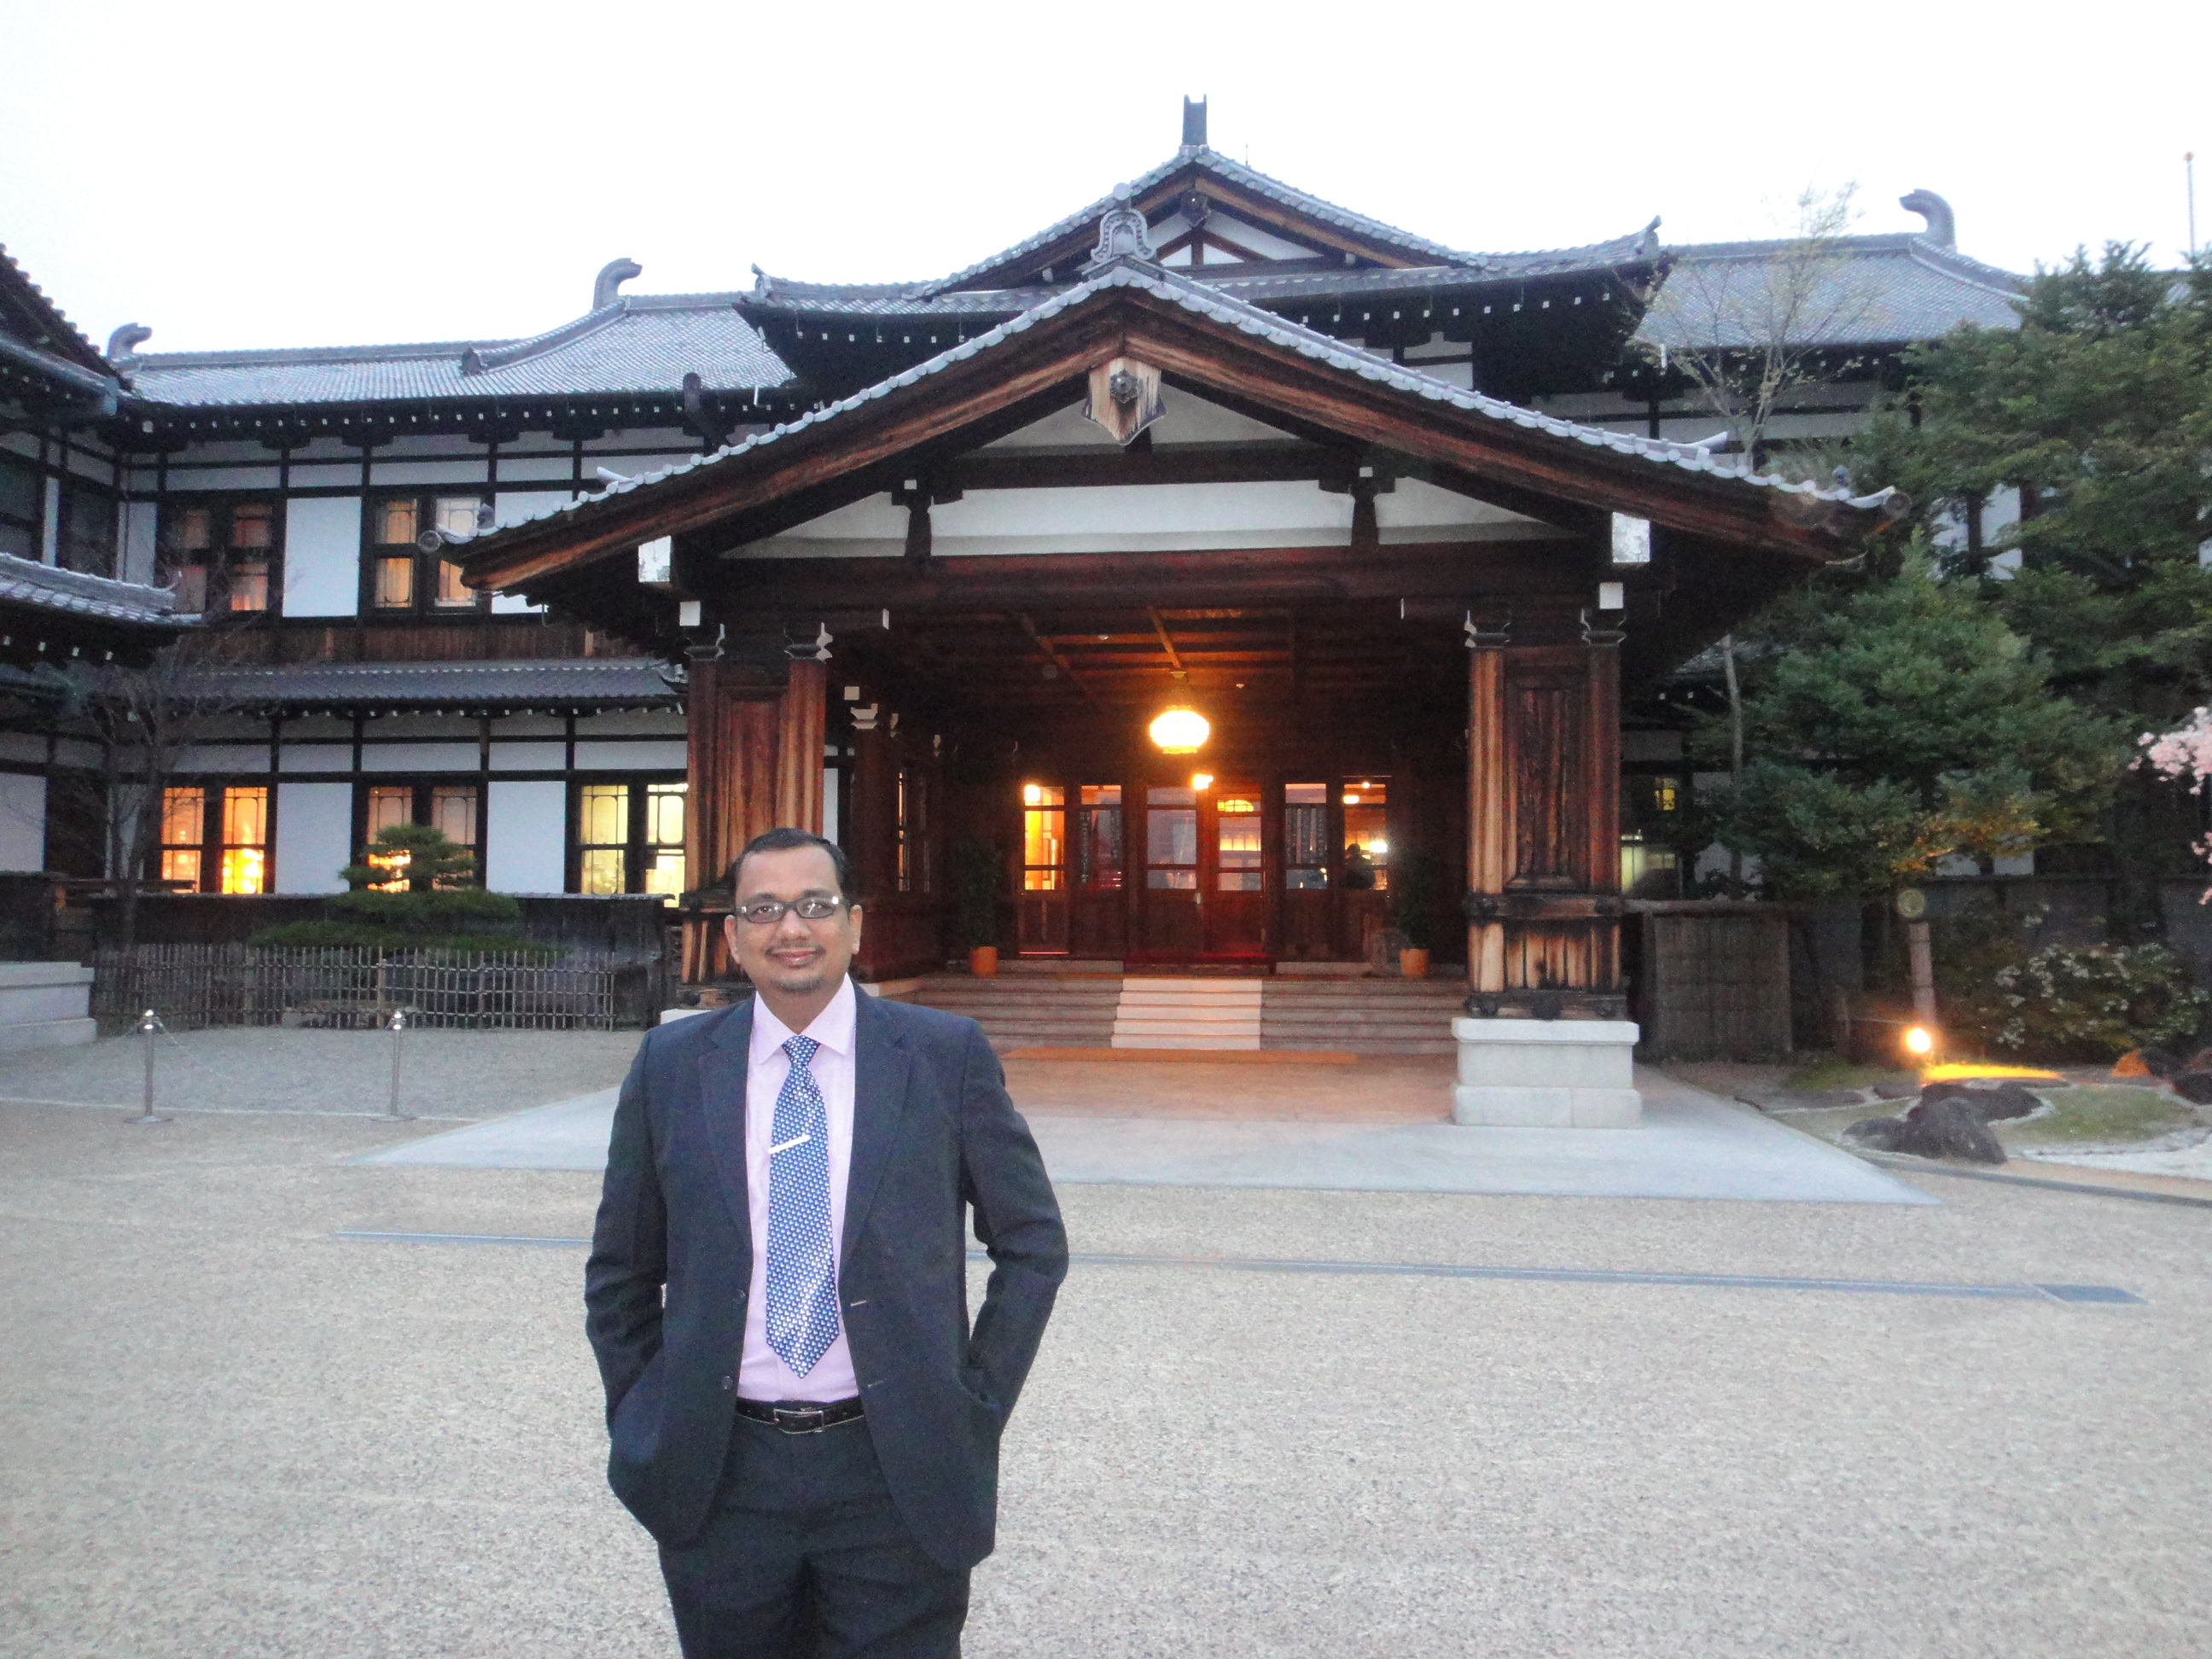 Dr Goyal during Asia Pacific Meeting at Nara, Japan